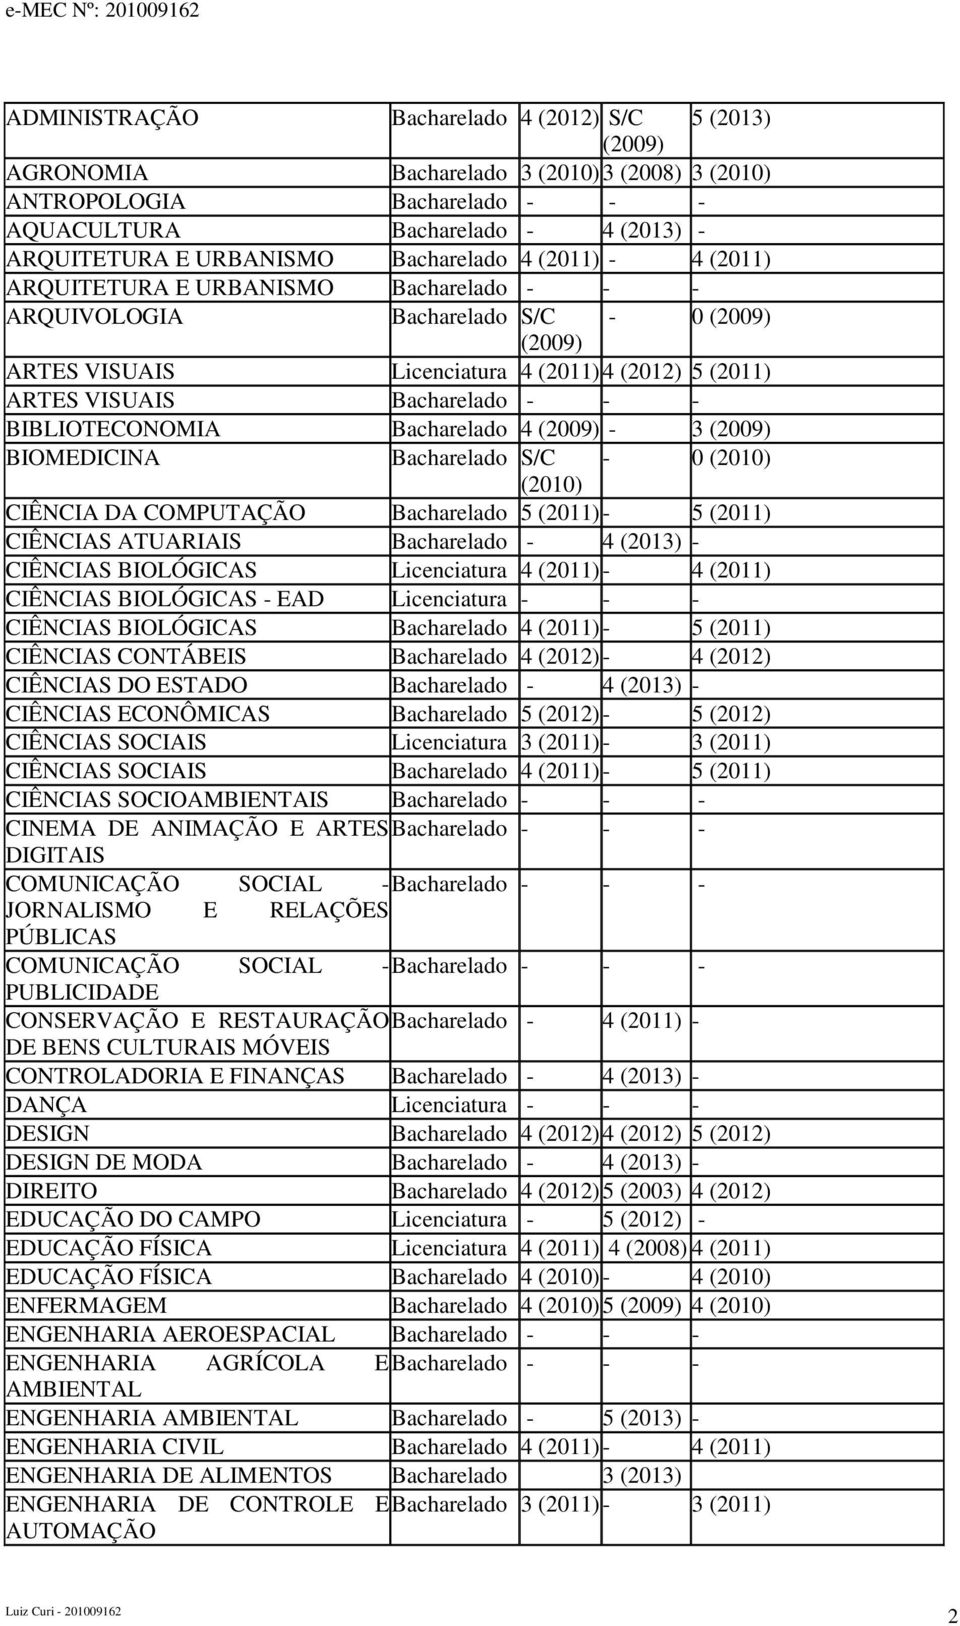 Bacharelado - - - BIBLIOTECONOMIA Bacharelado 4 (2009) - 3 (2009) BIOMEDICINA Bacharelado S/C - 0 (2010) (2010) CIÊNCIA DA COMPUTAÇÃO Bacharelado 5 (2011) - 5 (2011) CIÊNCIAS ATUARIAIS Bacharelado -